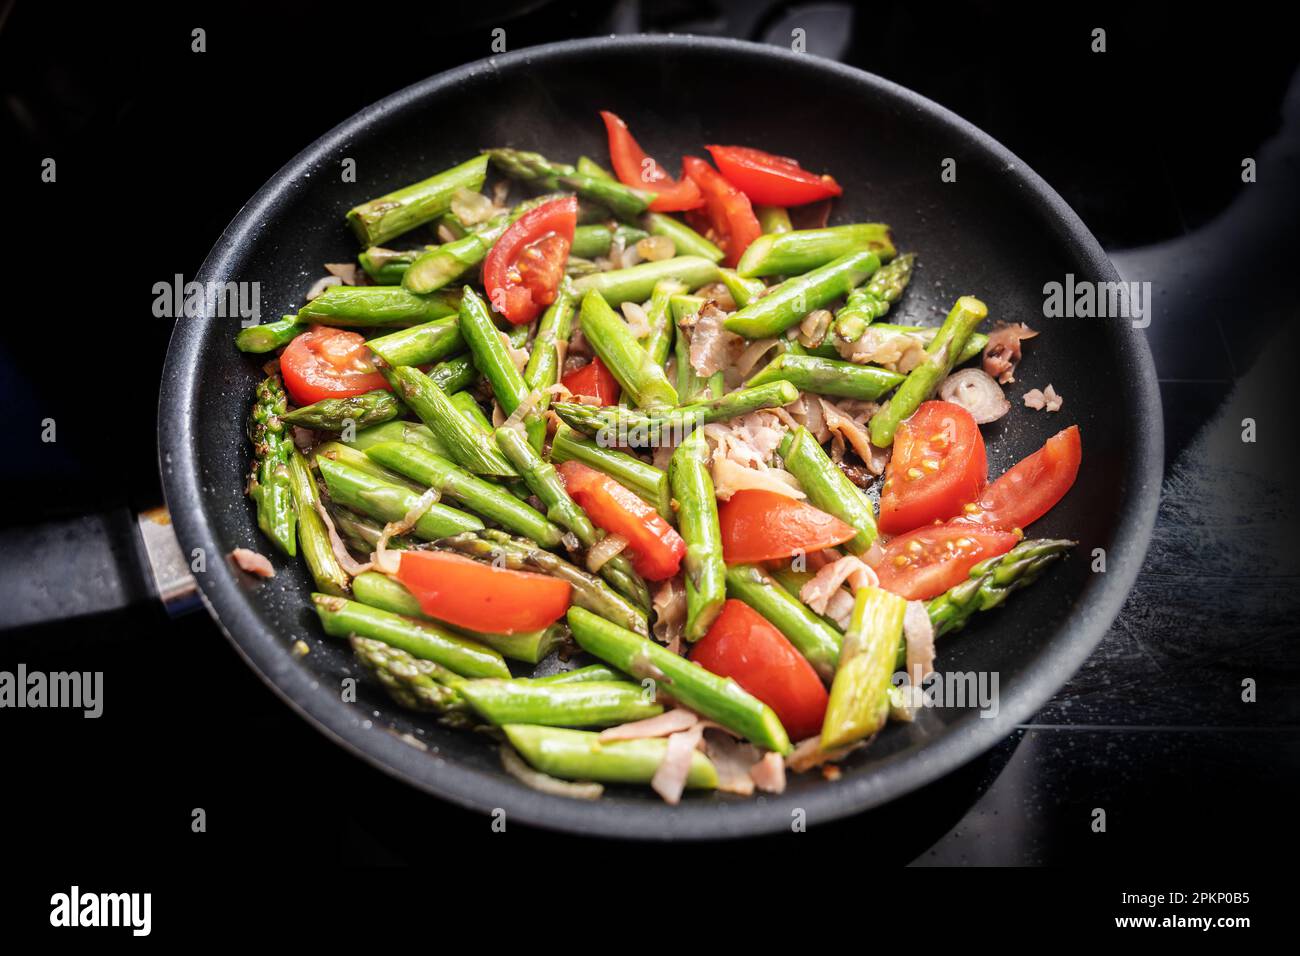 Asperges vertes, tomates et jambon de Parme dans une poêle noire sur le dessus de la cuisinière, la cuisson d'un repas de printemps sain, foyer choisi, profondeur étroite de fie Banque D'Images